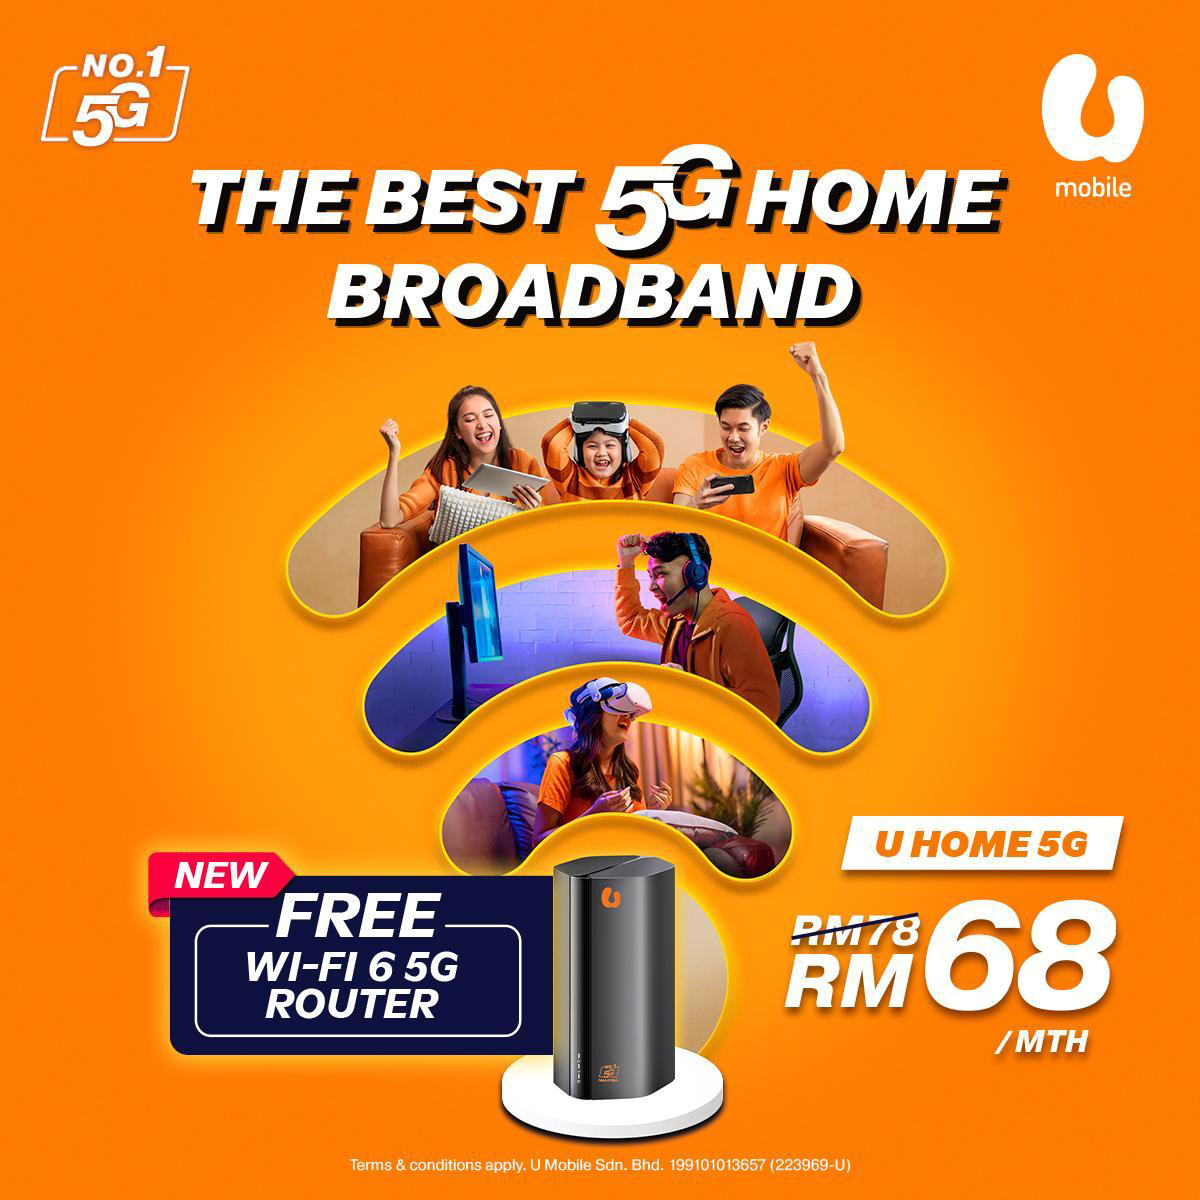 U Mobile Home 5G campaign